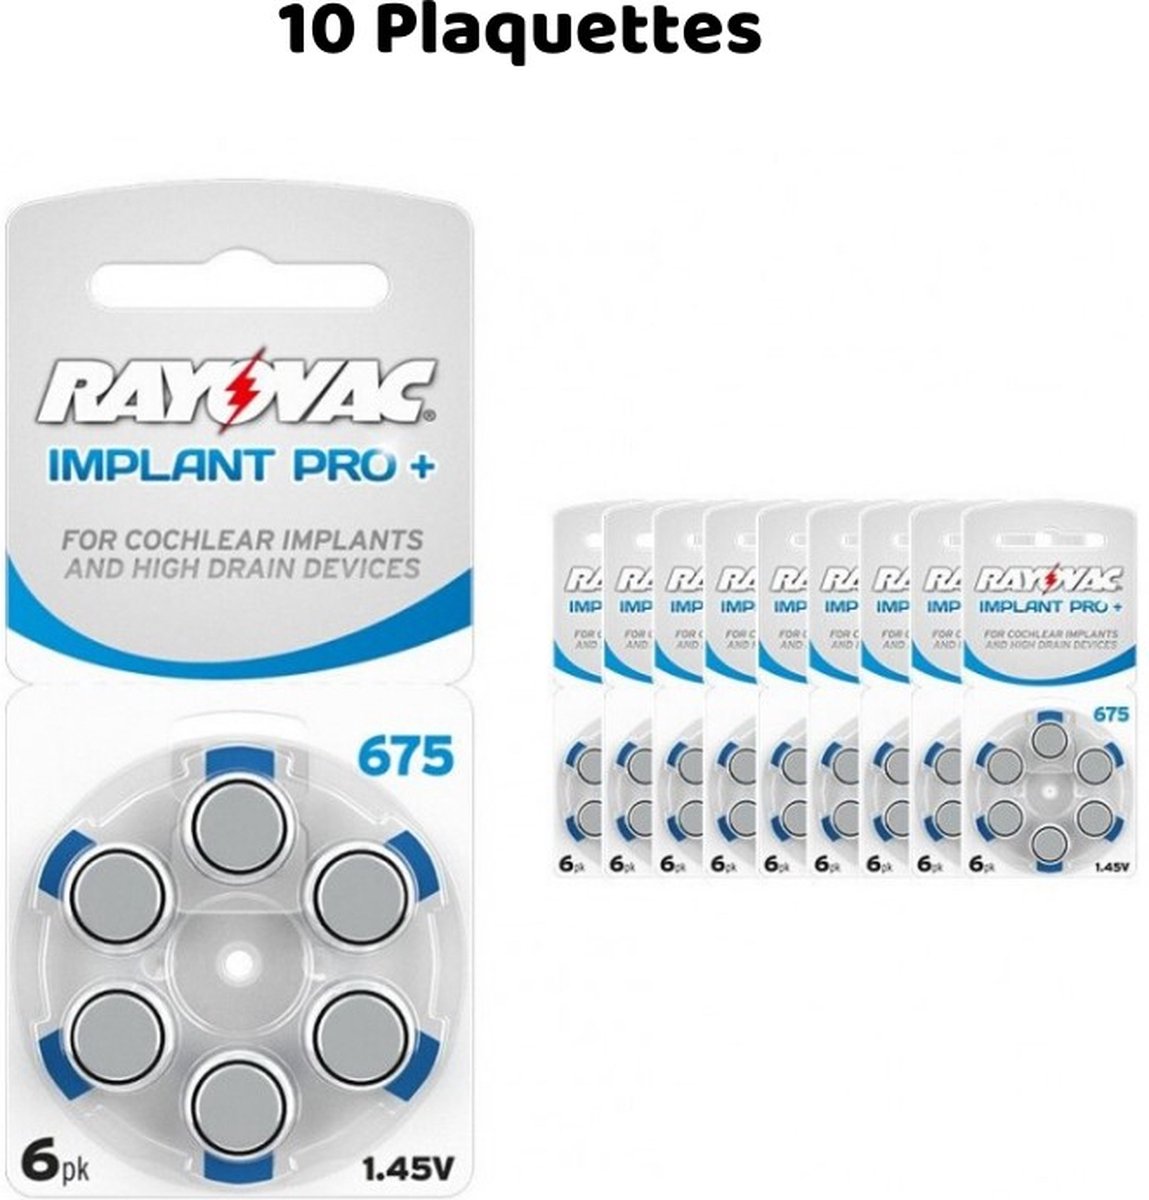 Hoortoestel batterijen Rayovac 675 Implant Pro+, 10 elektroden